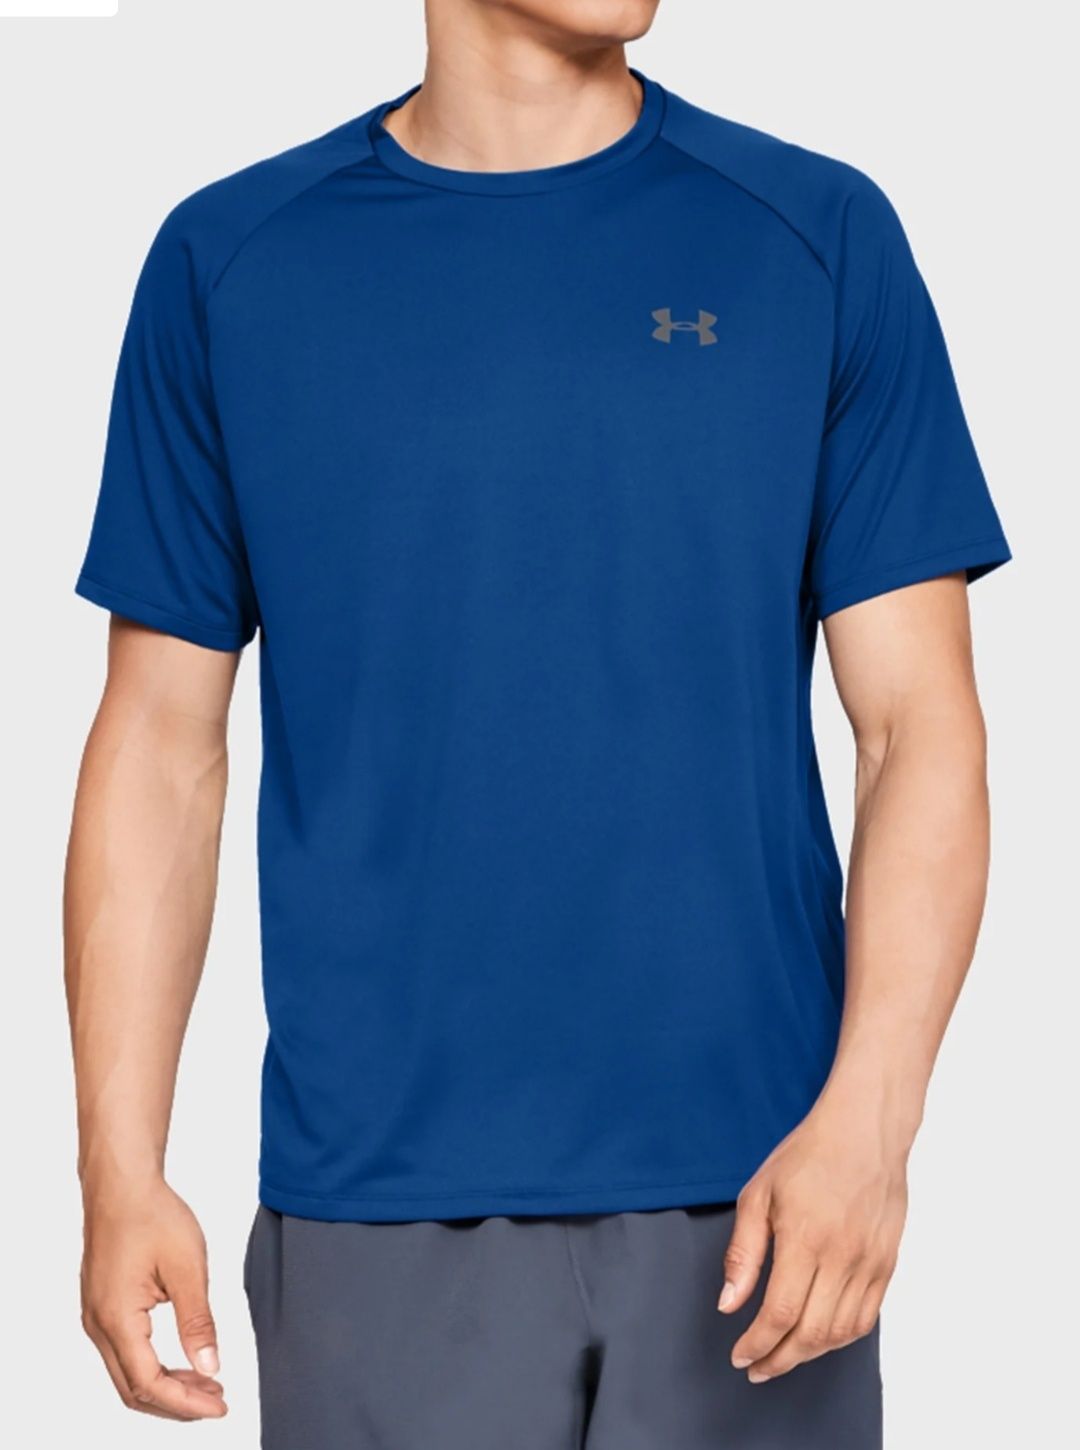 XL Under Armour оригінальна чоловіча спортивна футболка